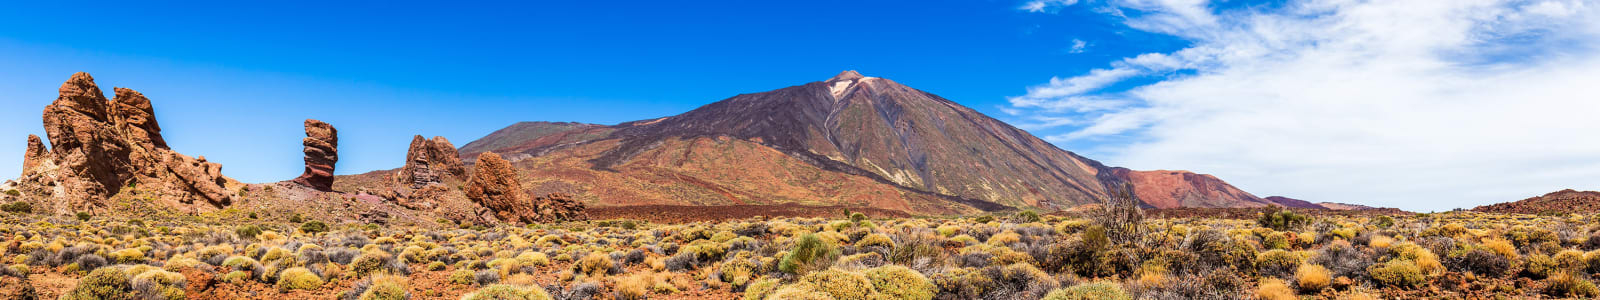 Scenic Tenerife hillside